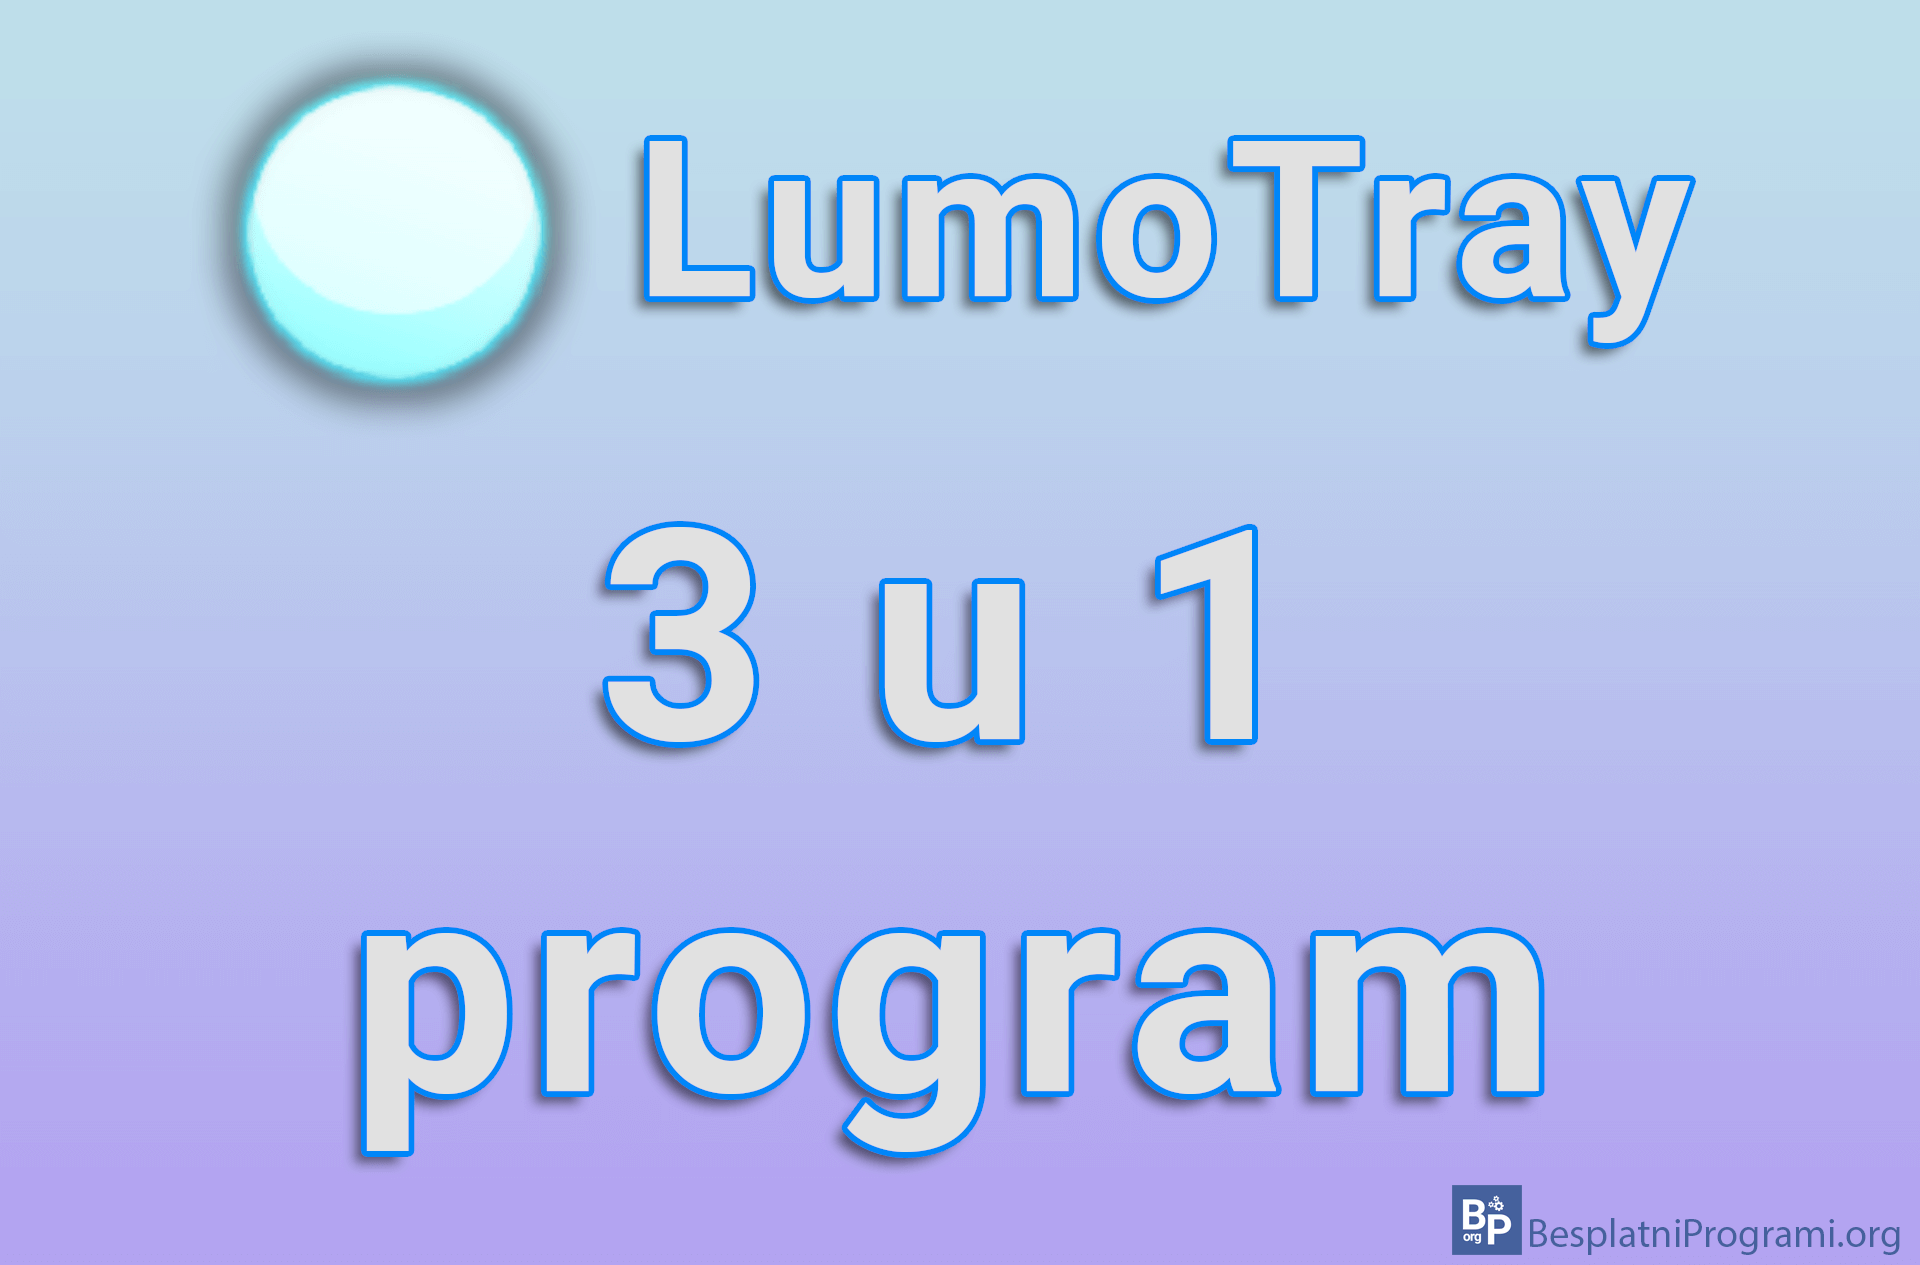 LumoTray – 3 u 1 program